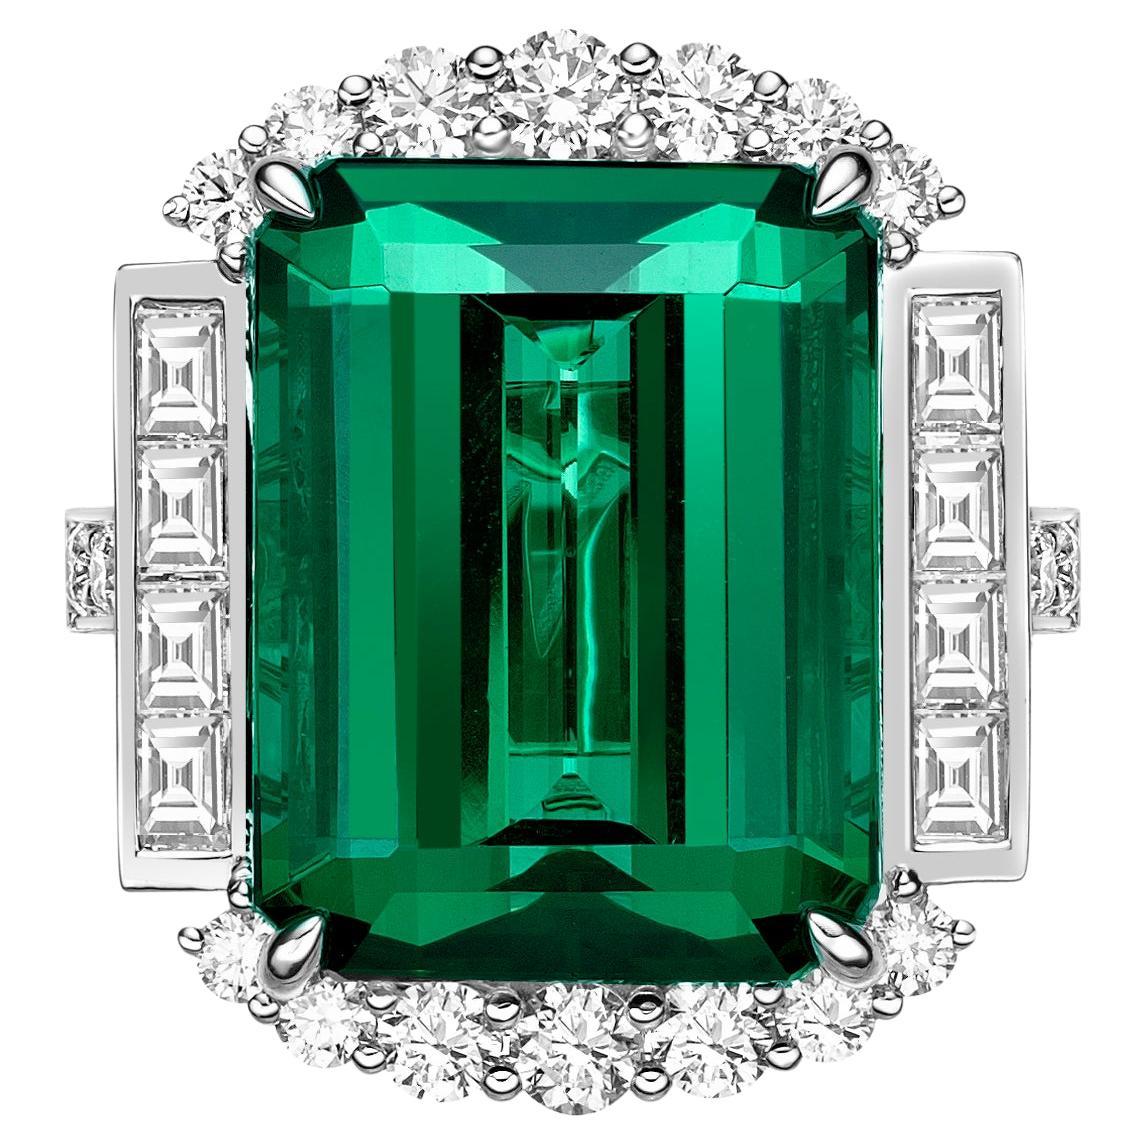 15.67 Carat Green Tourmaline Ring in 18Karat White Gold with Diamond. 